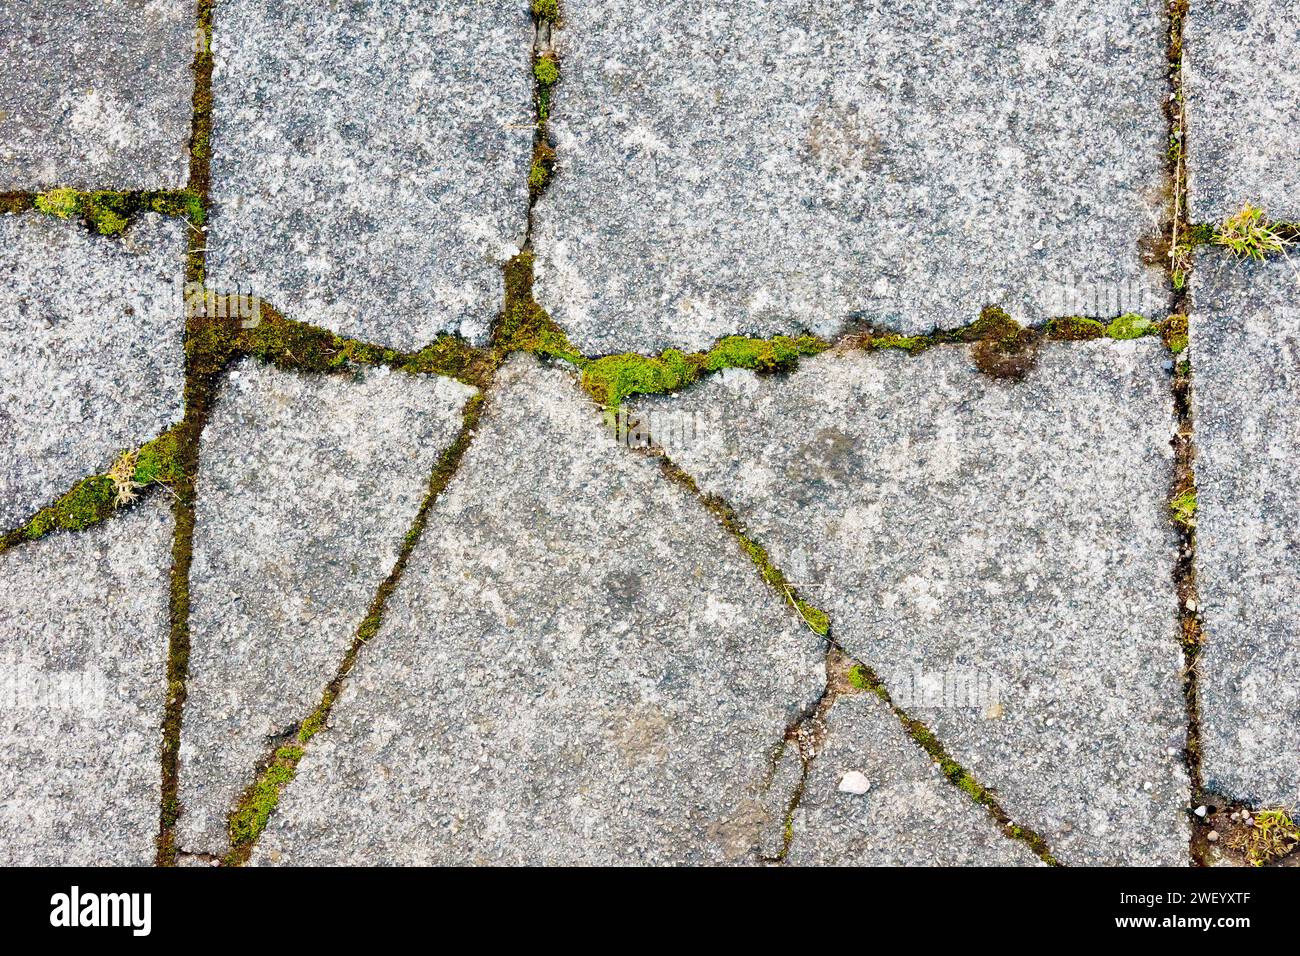 Primo piano con diverse lastre di pavimentazione in calcestruzzo rotte e muschi, erba e altre piante che sfruttano e crescono nelle crepe. Foto Stock